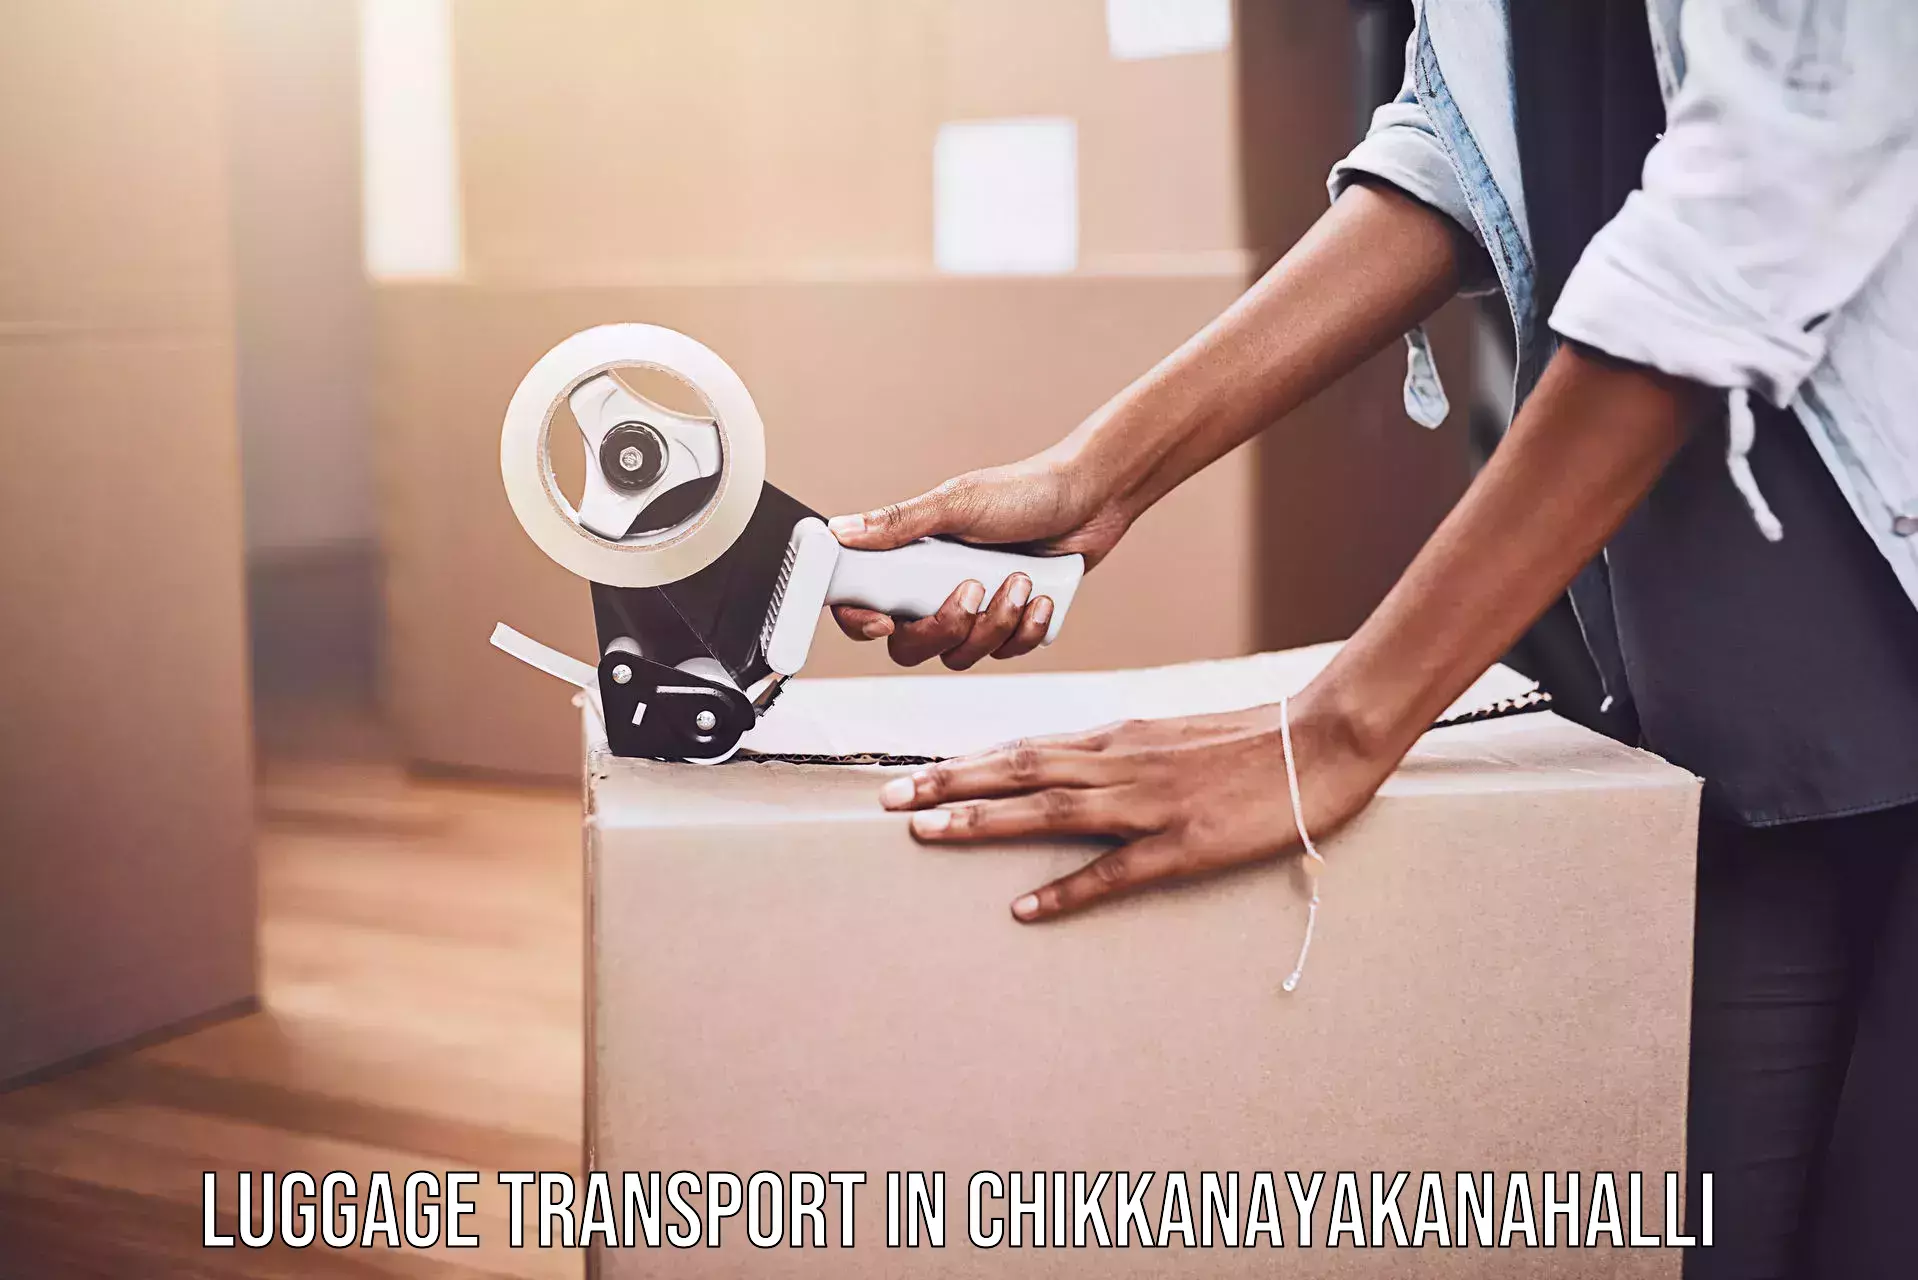 Overnight baggage shipping in Chikkanayakanahalli